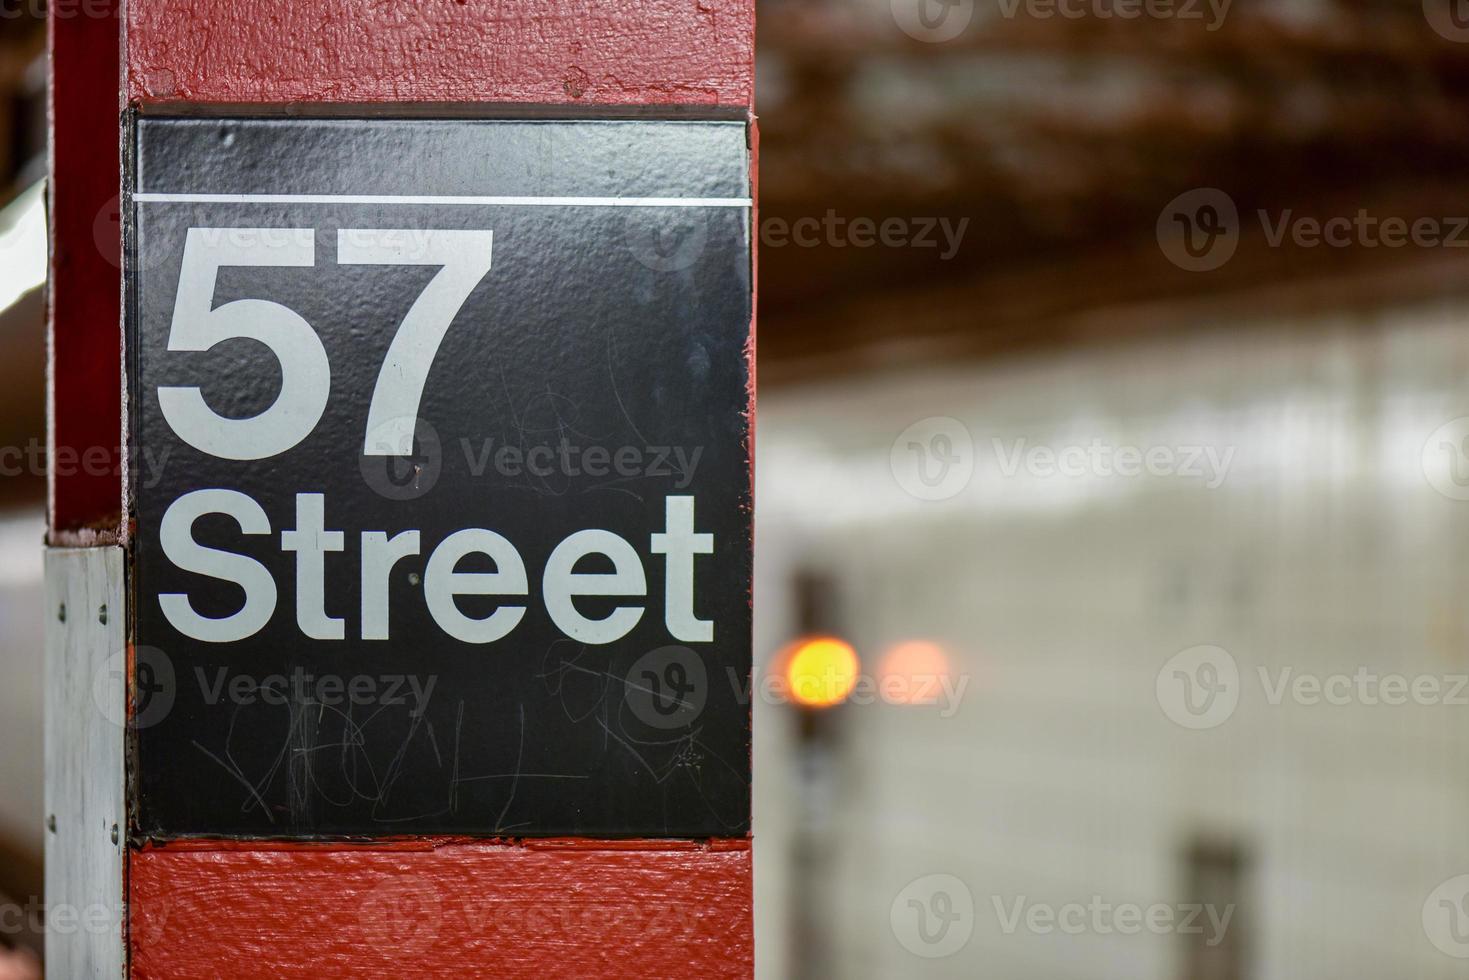 estação de metrô 57th street de nova york em manhattan. foto